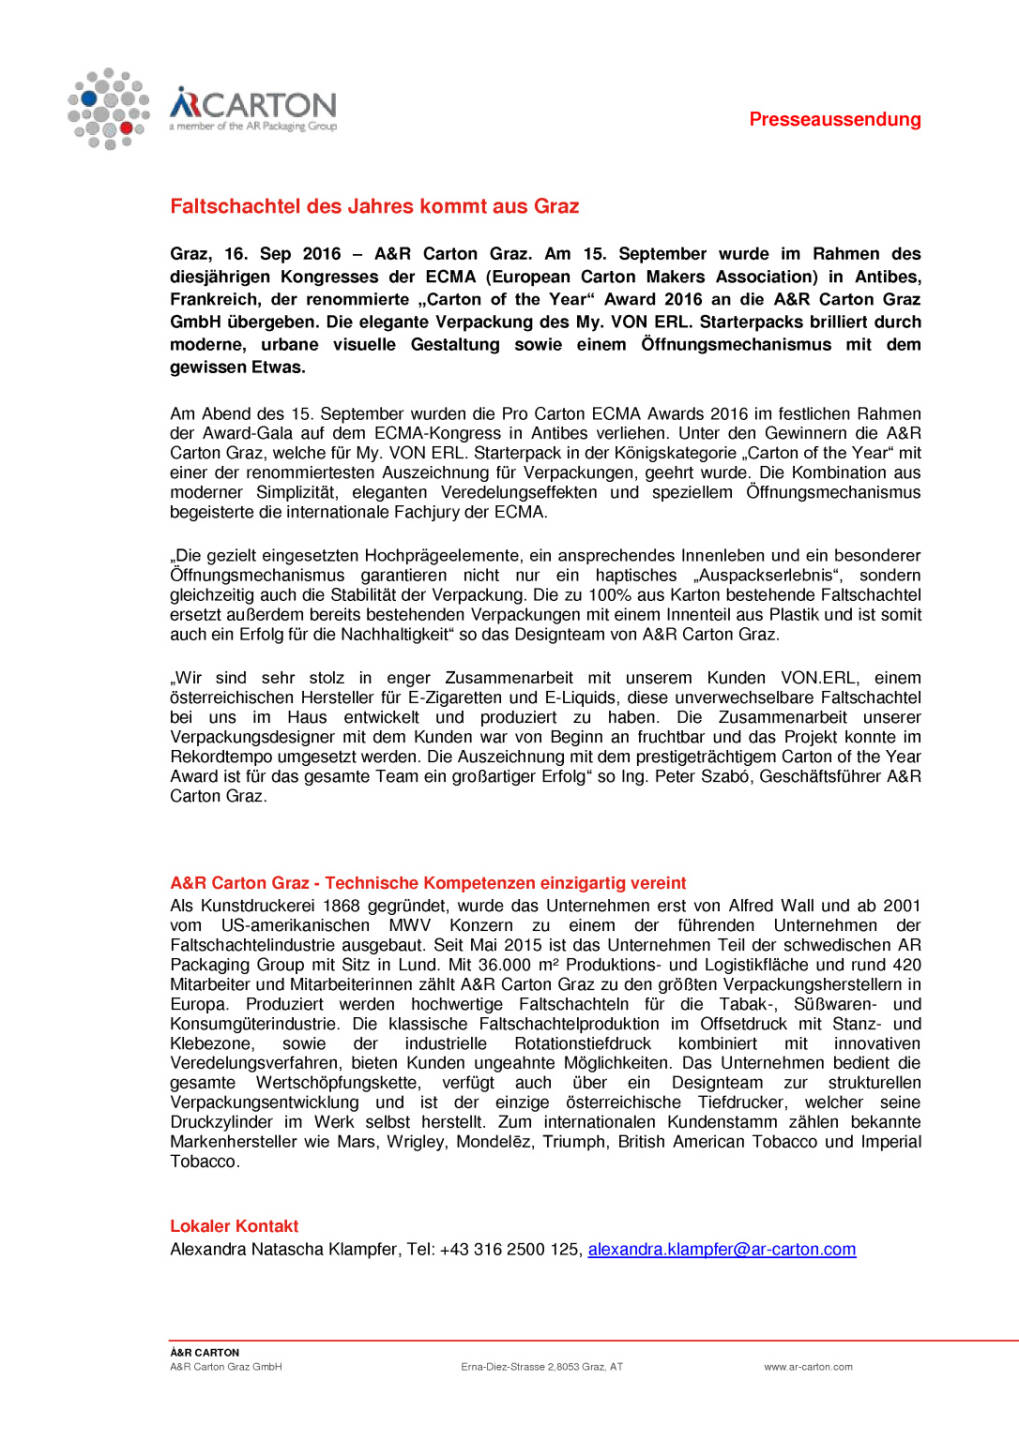  A&R Carton Graz: Faltschachtel des Jahres, Seite 1/1, komplettes Dokument unter http://boerse-social.com/static/uploads/file_1786__ar_carton_graz_faltschachtel_des_jahres.pdf